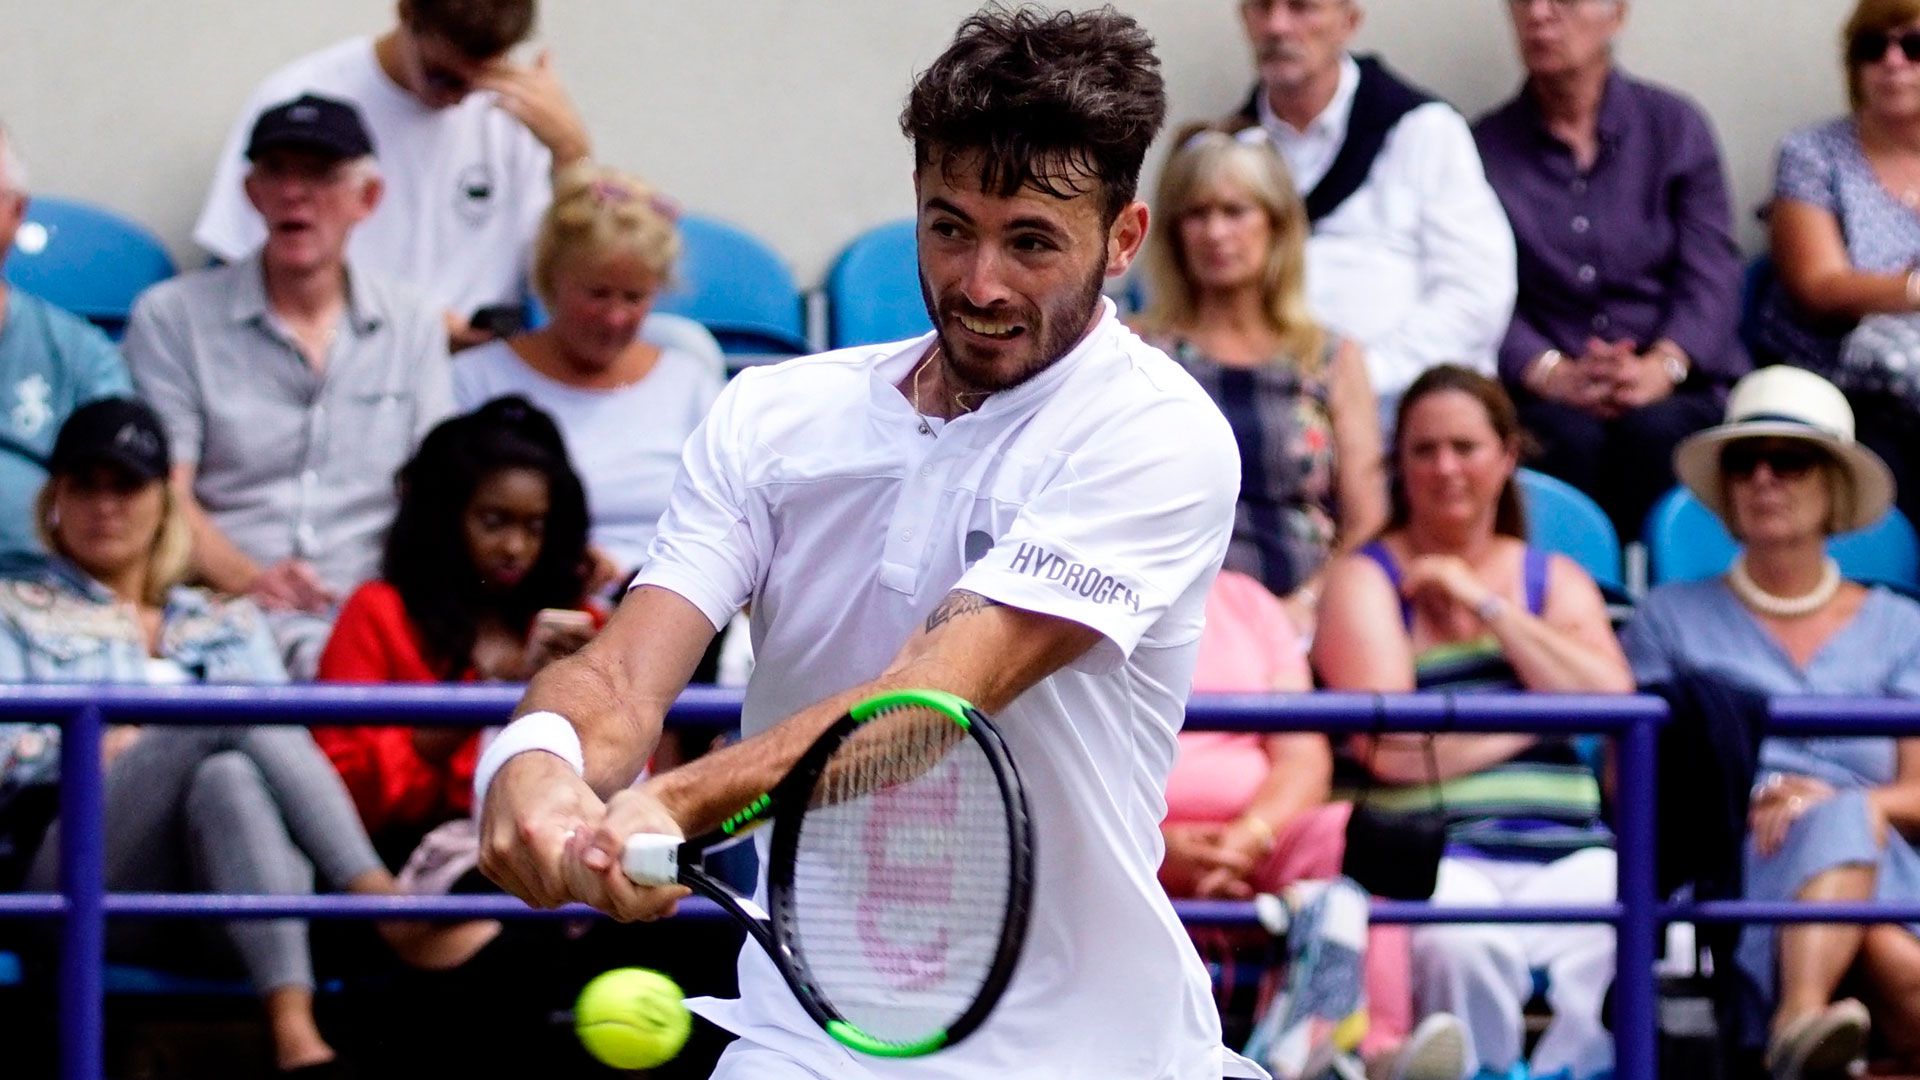 Lóndero tendrá su estreno en la Copa Davis (Shutterstock)